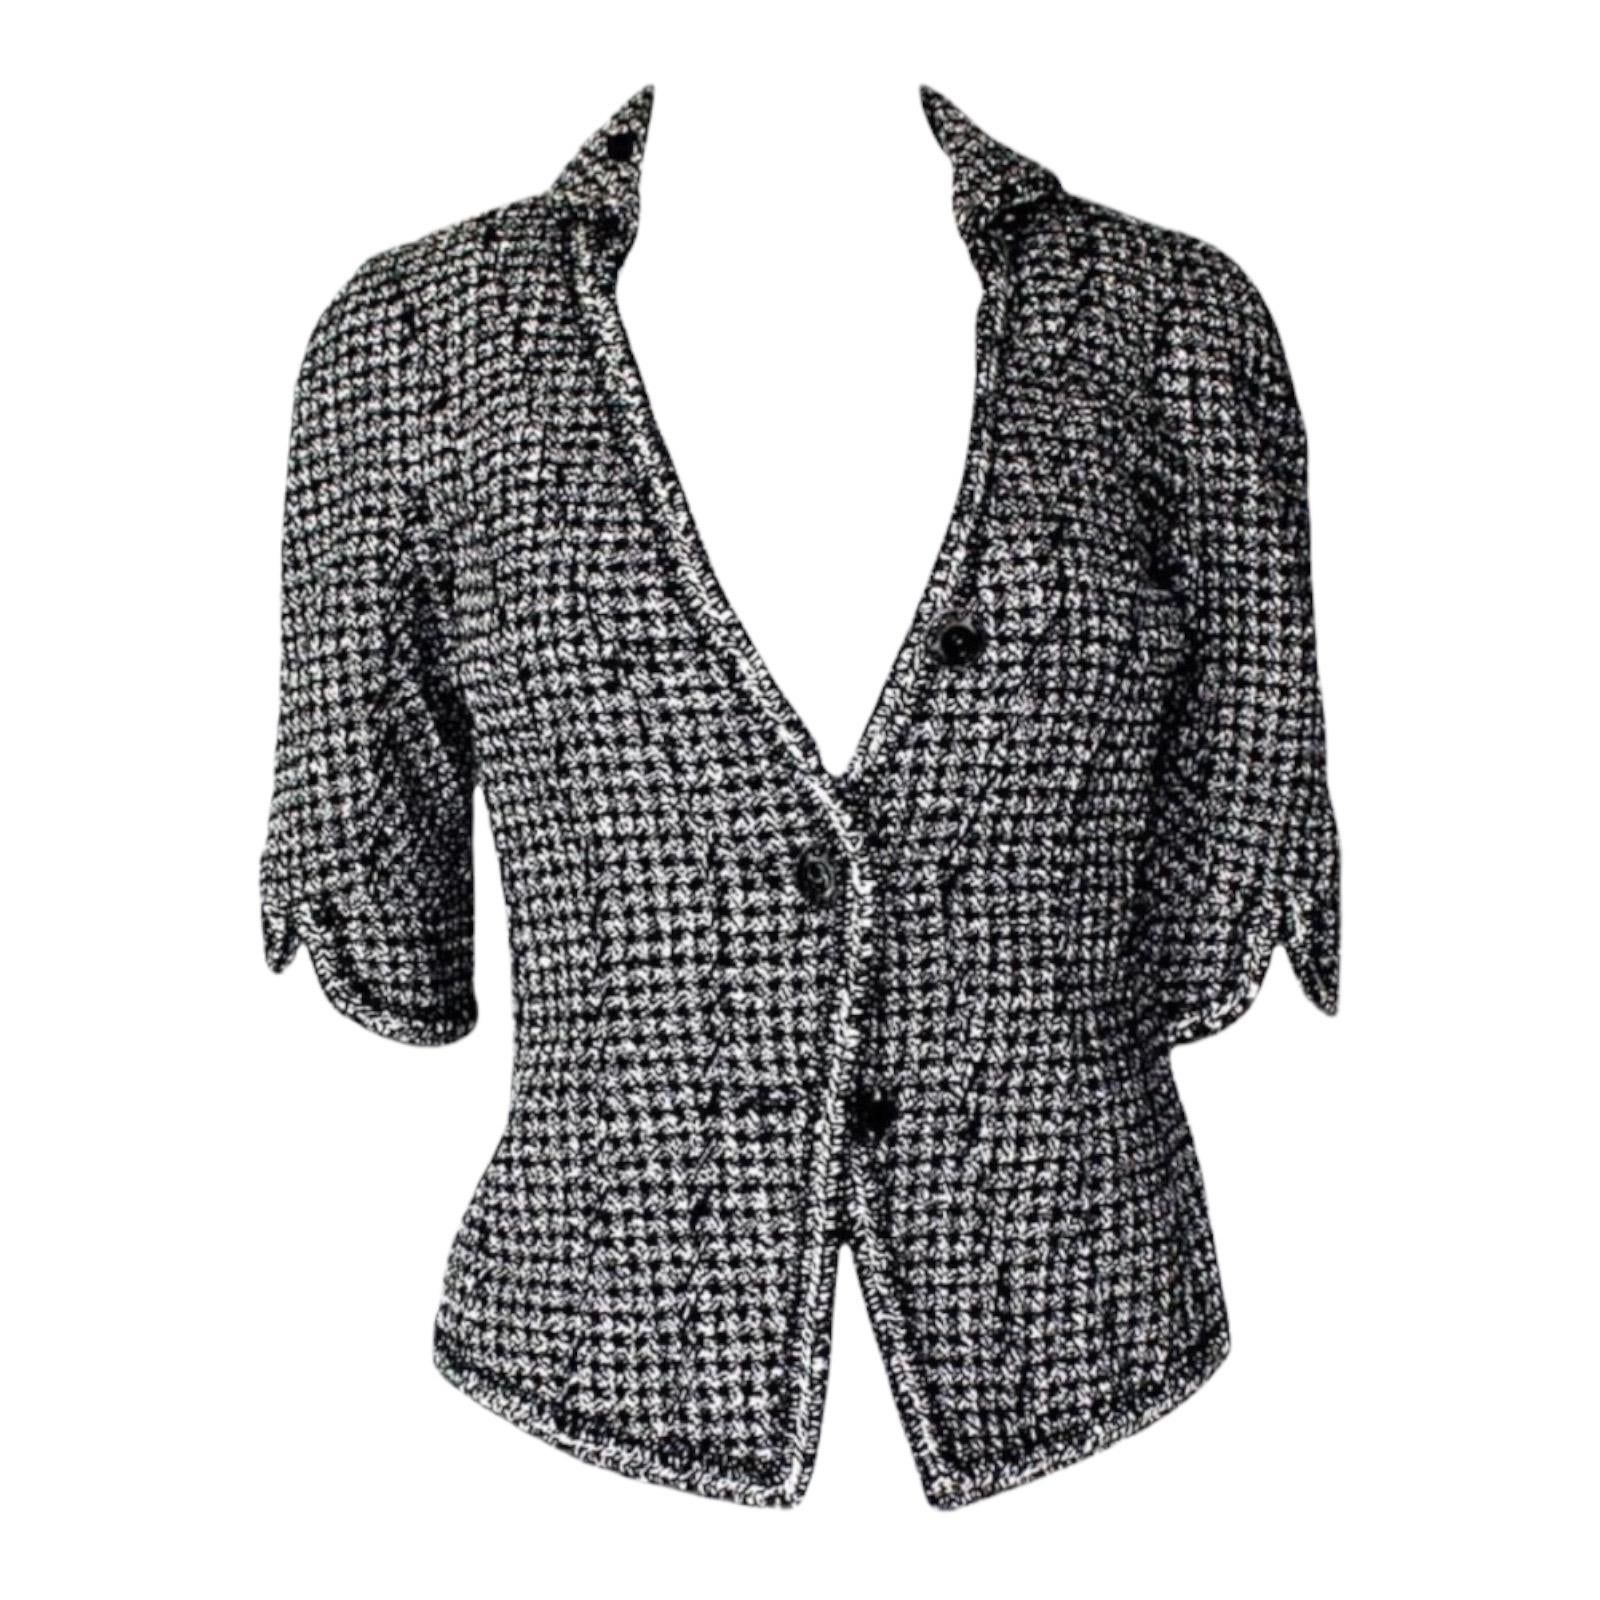 UNWORN Chanel Monochrome Cropped Tweed-Jacke Blazer mit geflochtenem Besatz 36 (Schwarz) im Angebot